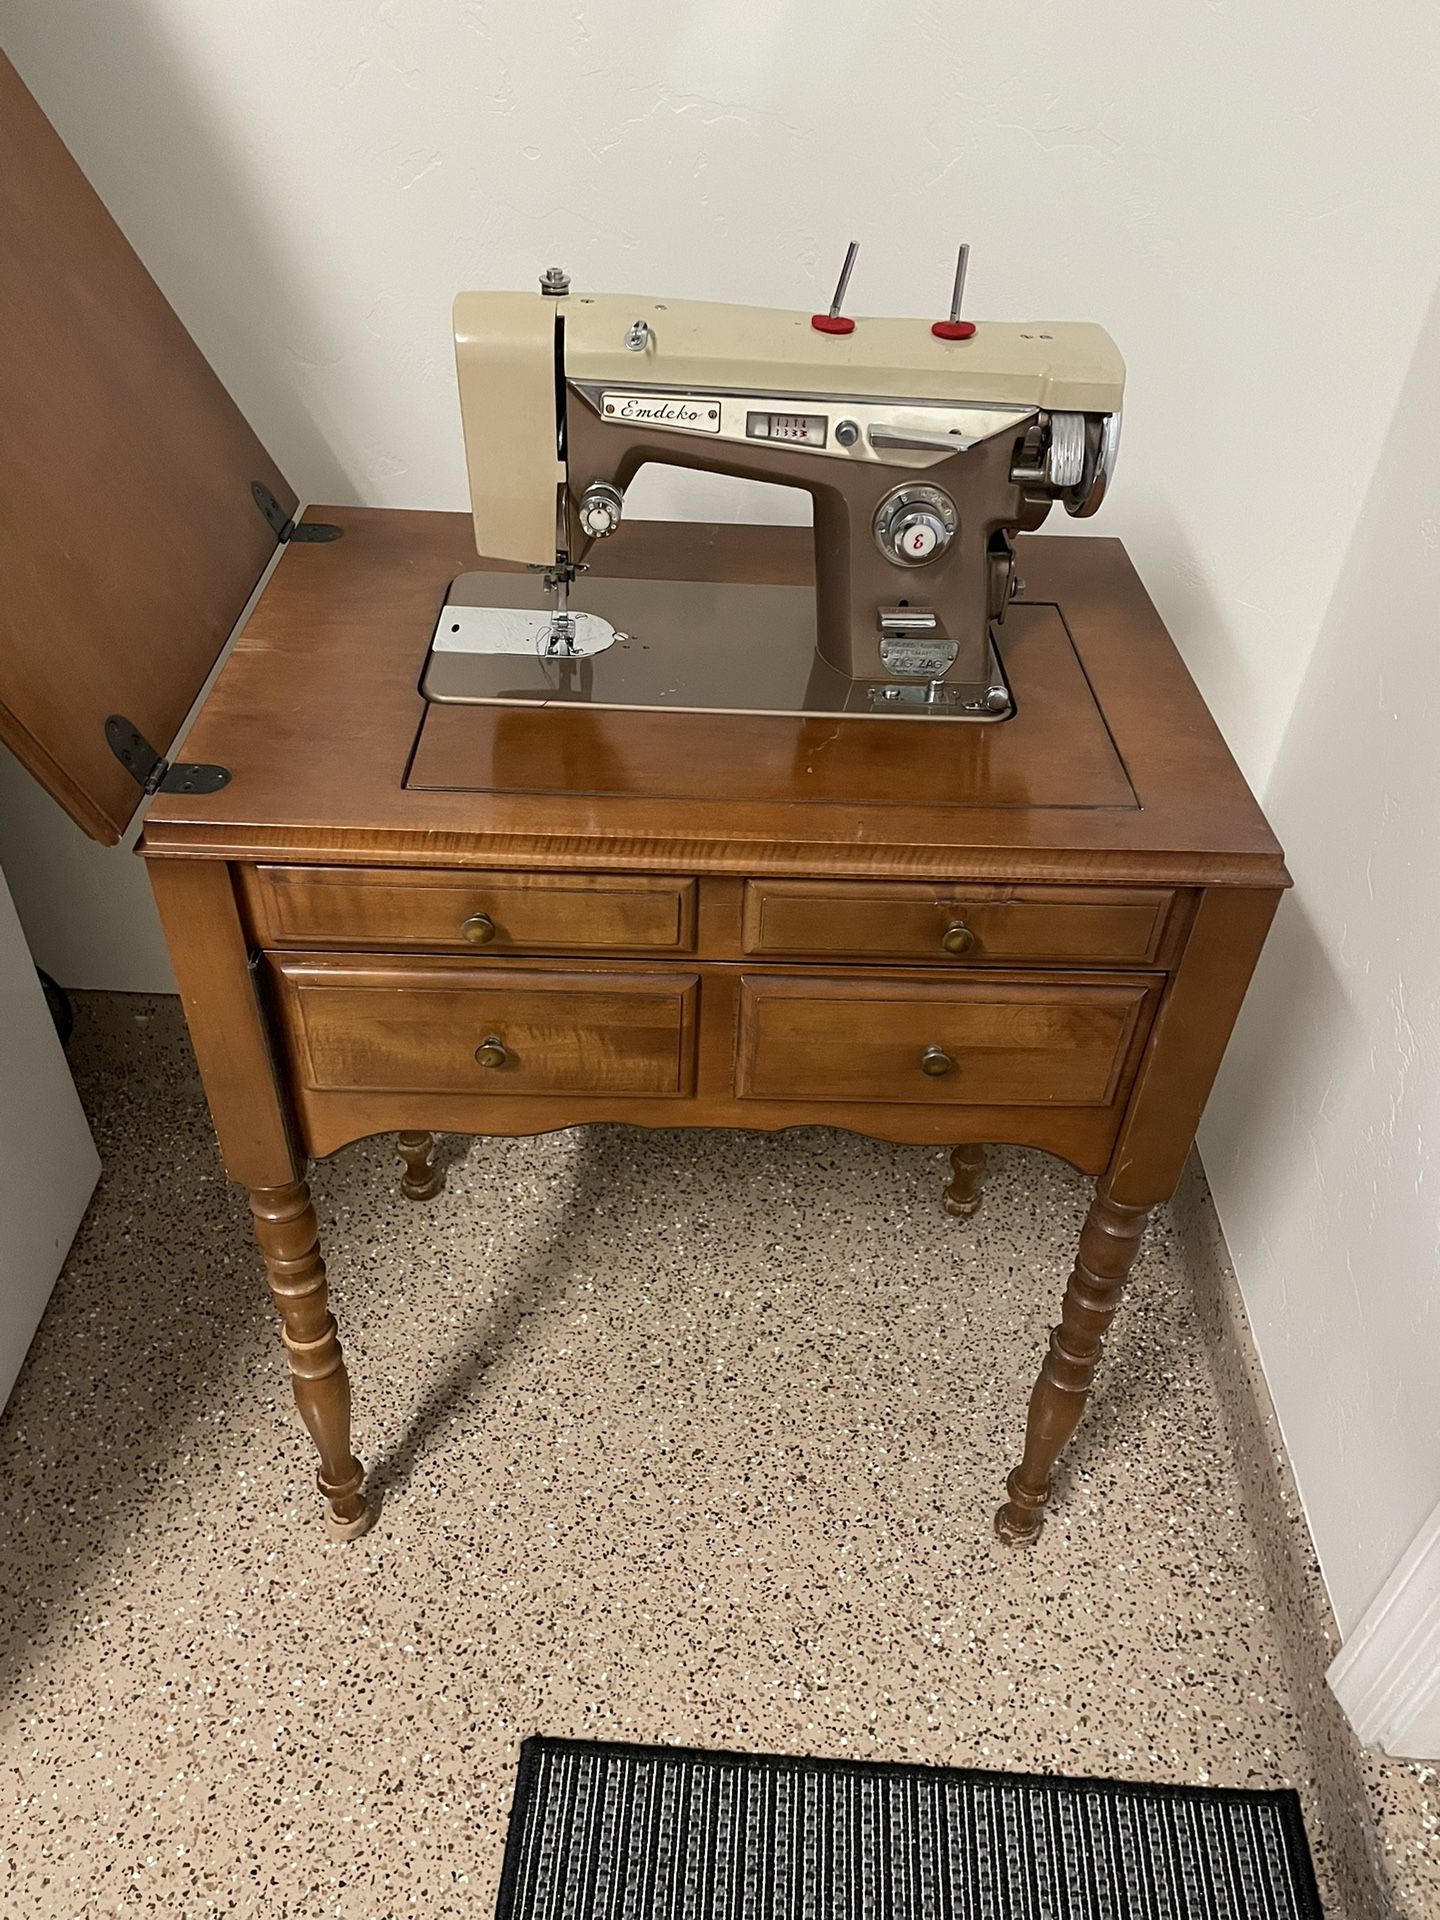 Antique Emdecko Sewing Machine In Cabinet